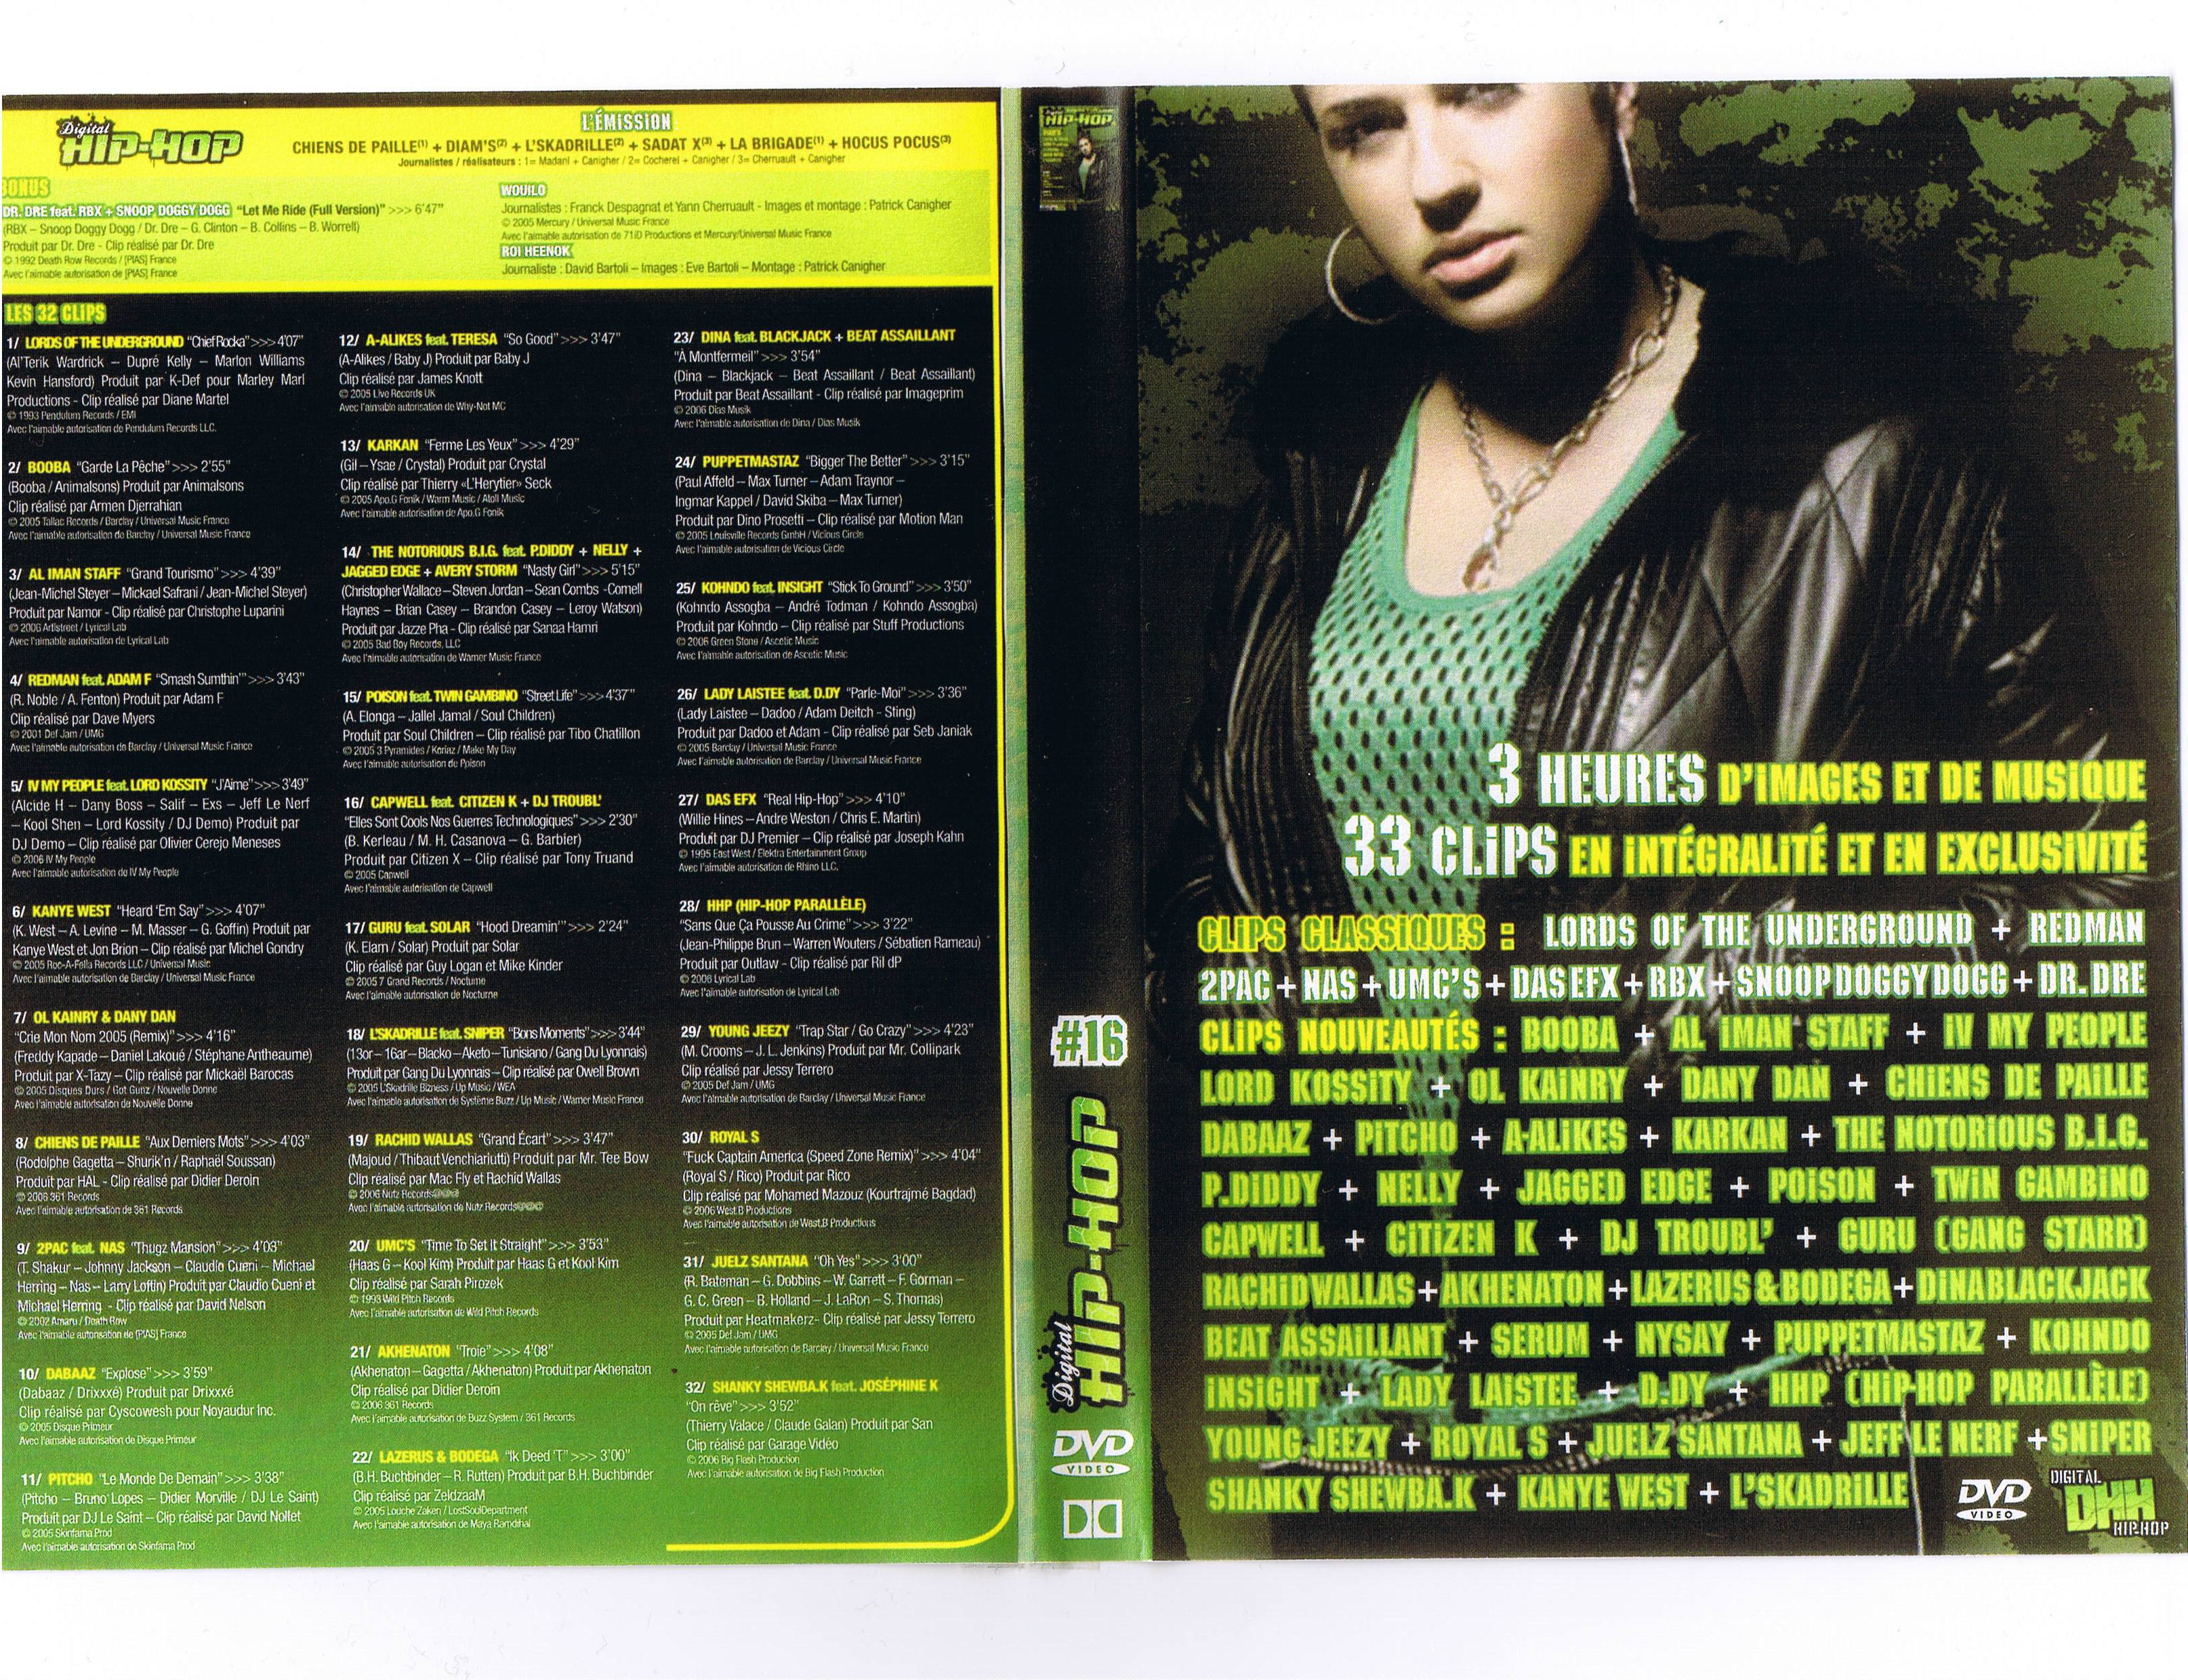 Jaquette DVD Digital hip hop vol 16